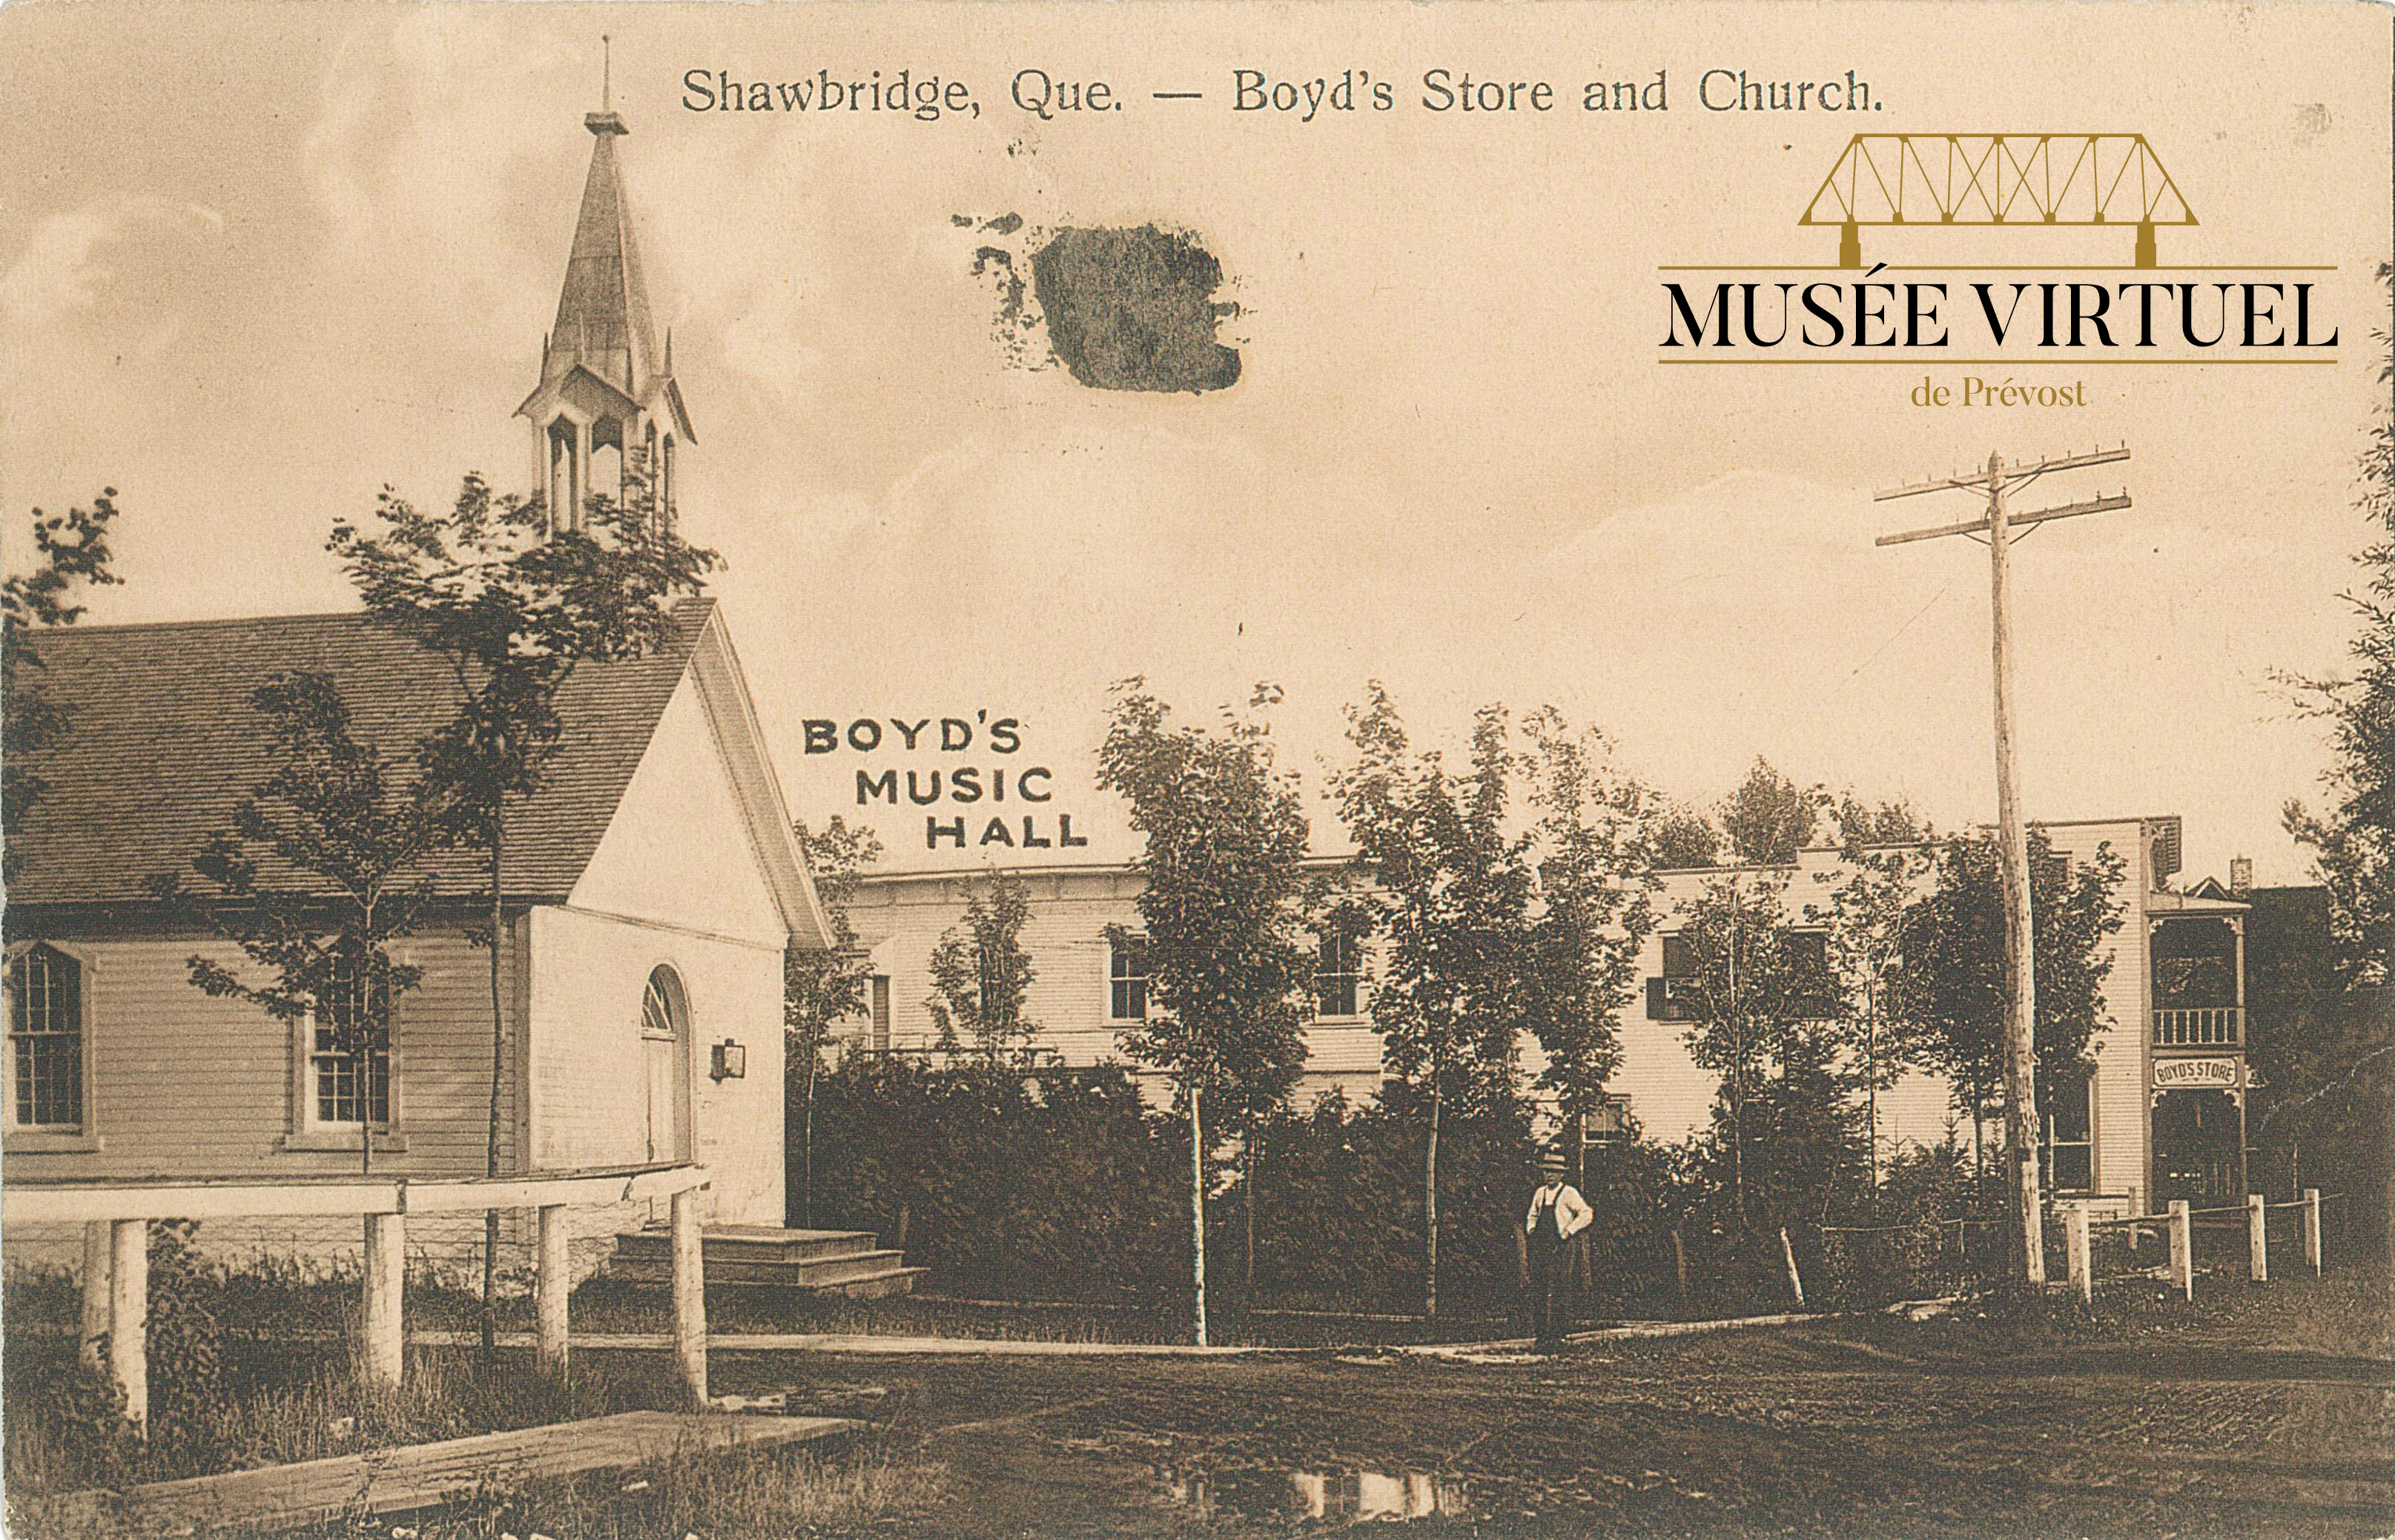 5. Église Unie de Shawbridge avant 1917 en avant-plan - Collection de Sheldon Segal